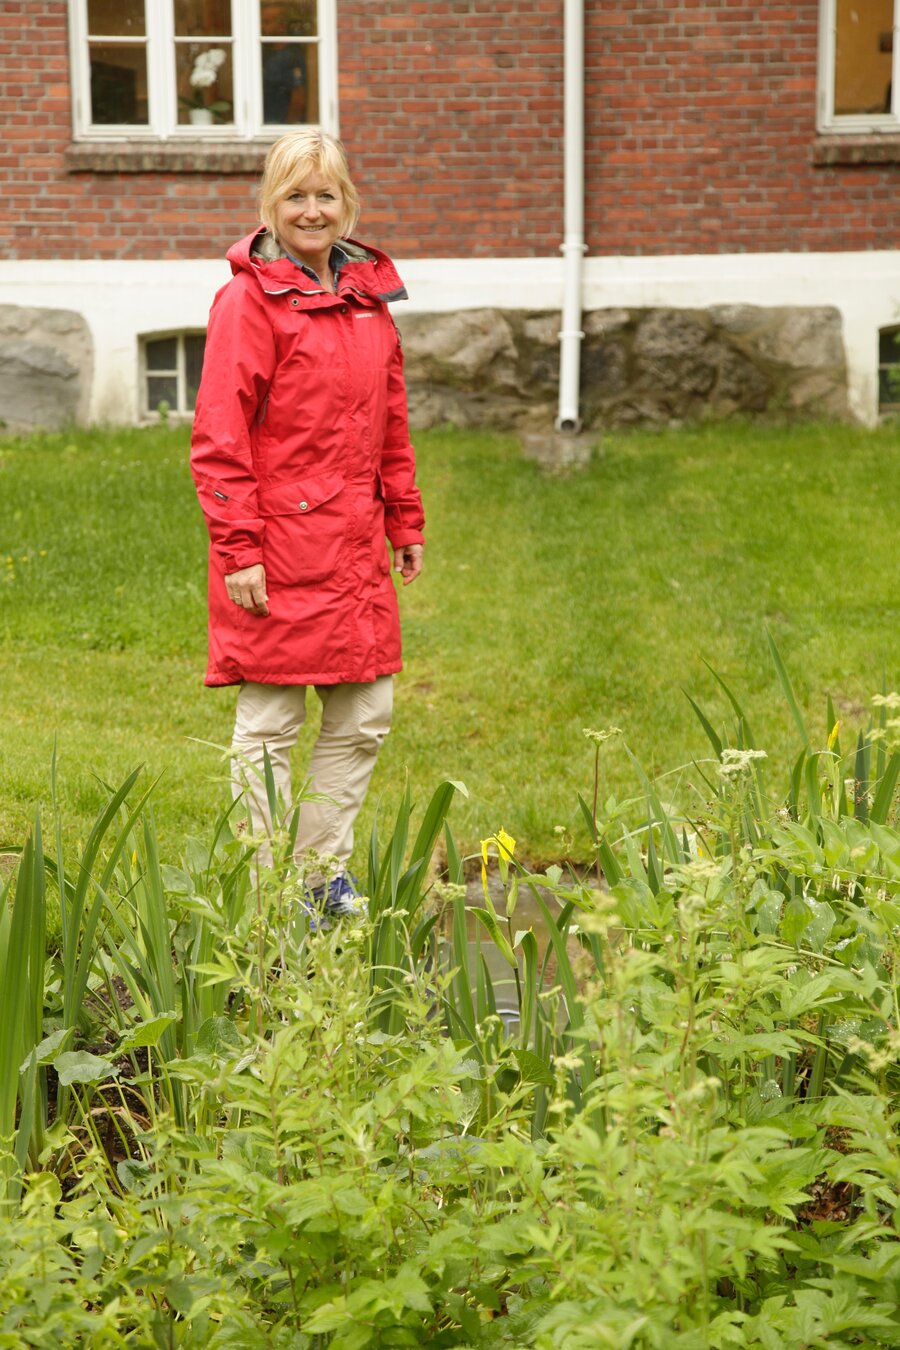 Førsteamanuensis Ingrid Merete Ødegård ved Institutt for landskapsplanlegging ved NMBU ser at vannet fra taknedløpet i bakgrunnen renner mot regnbedet. Vannflaten skjules delvis av plantene. 